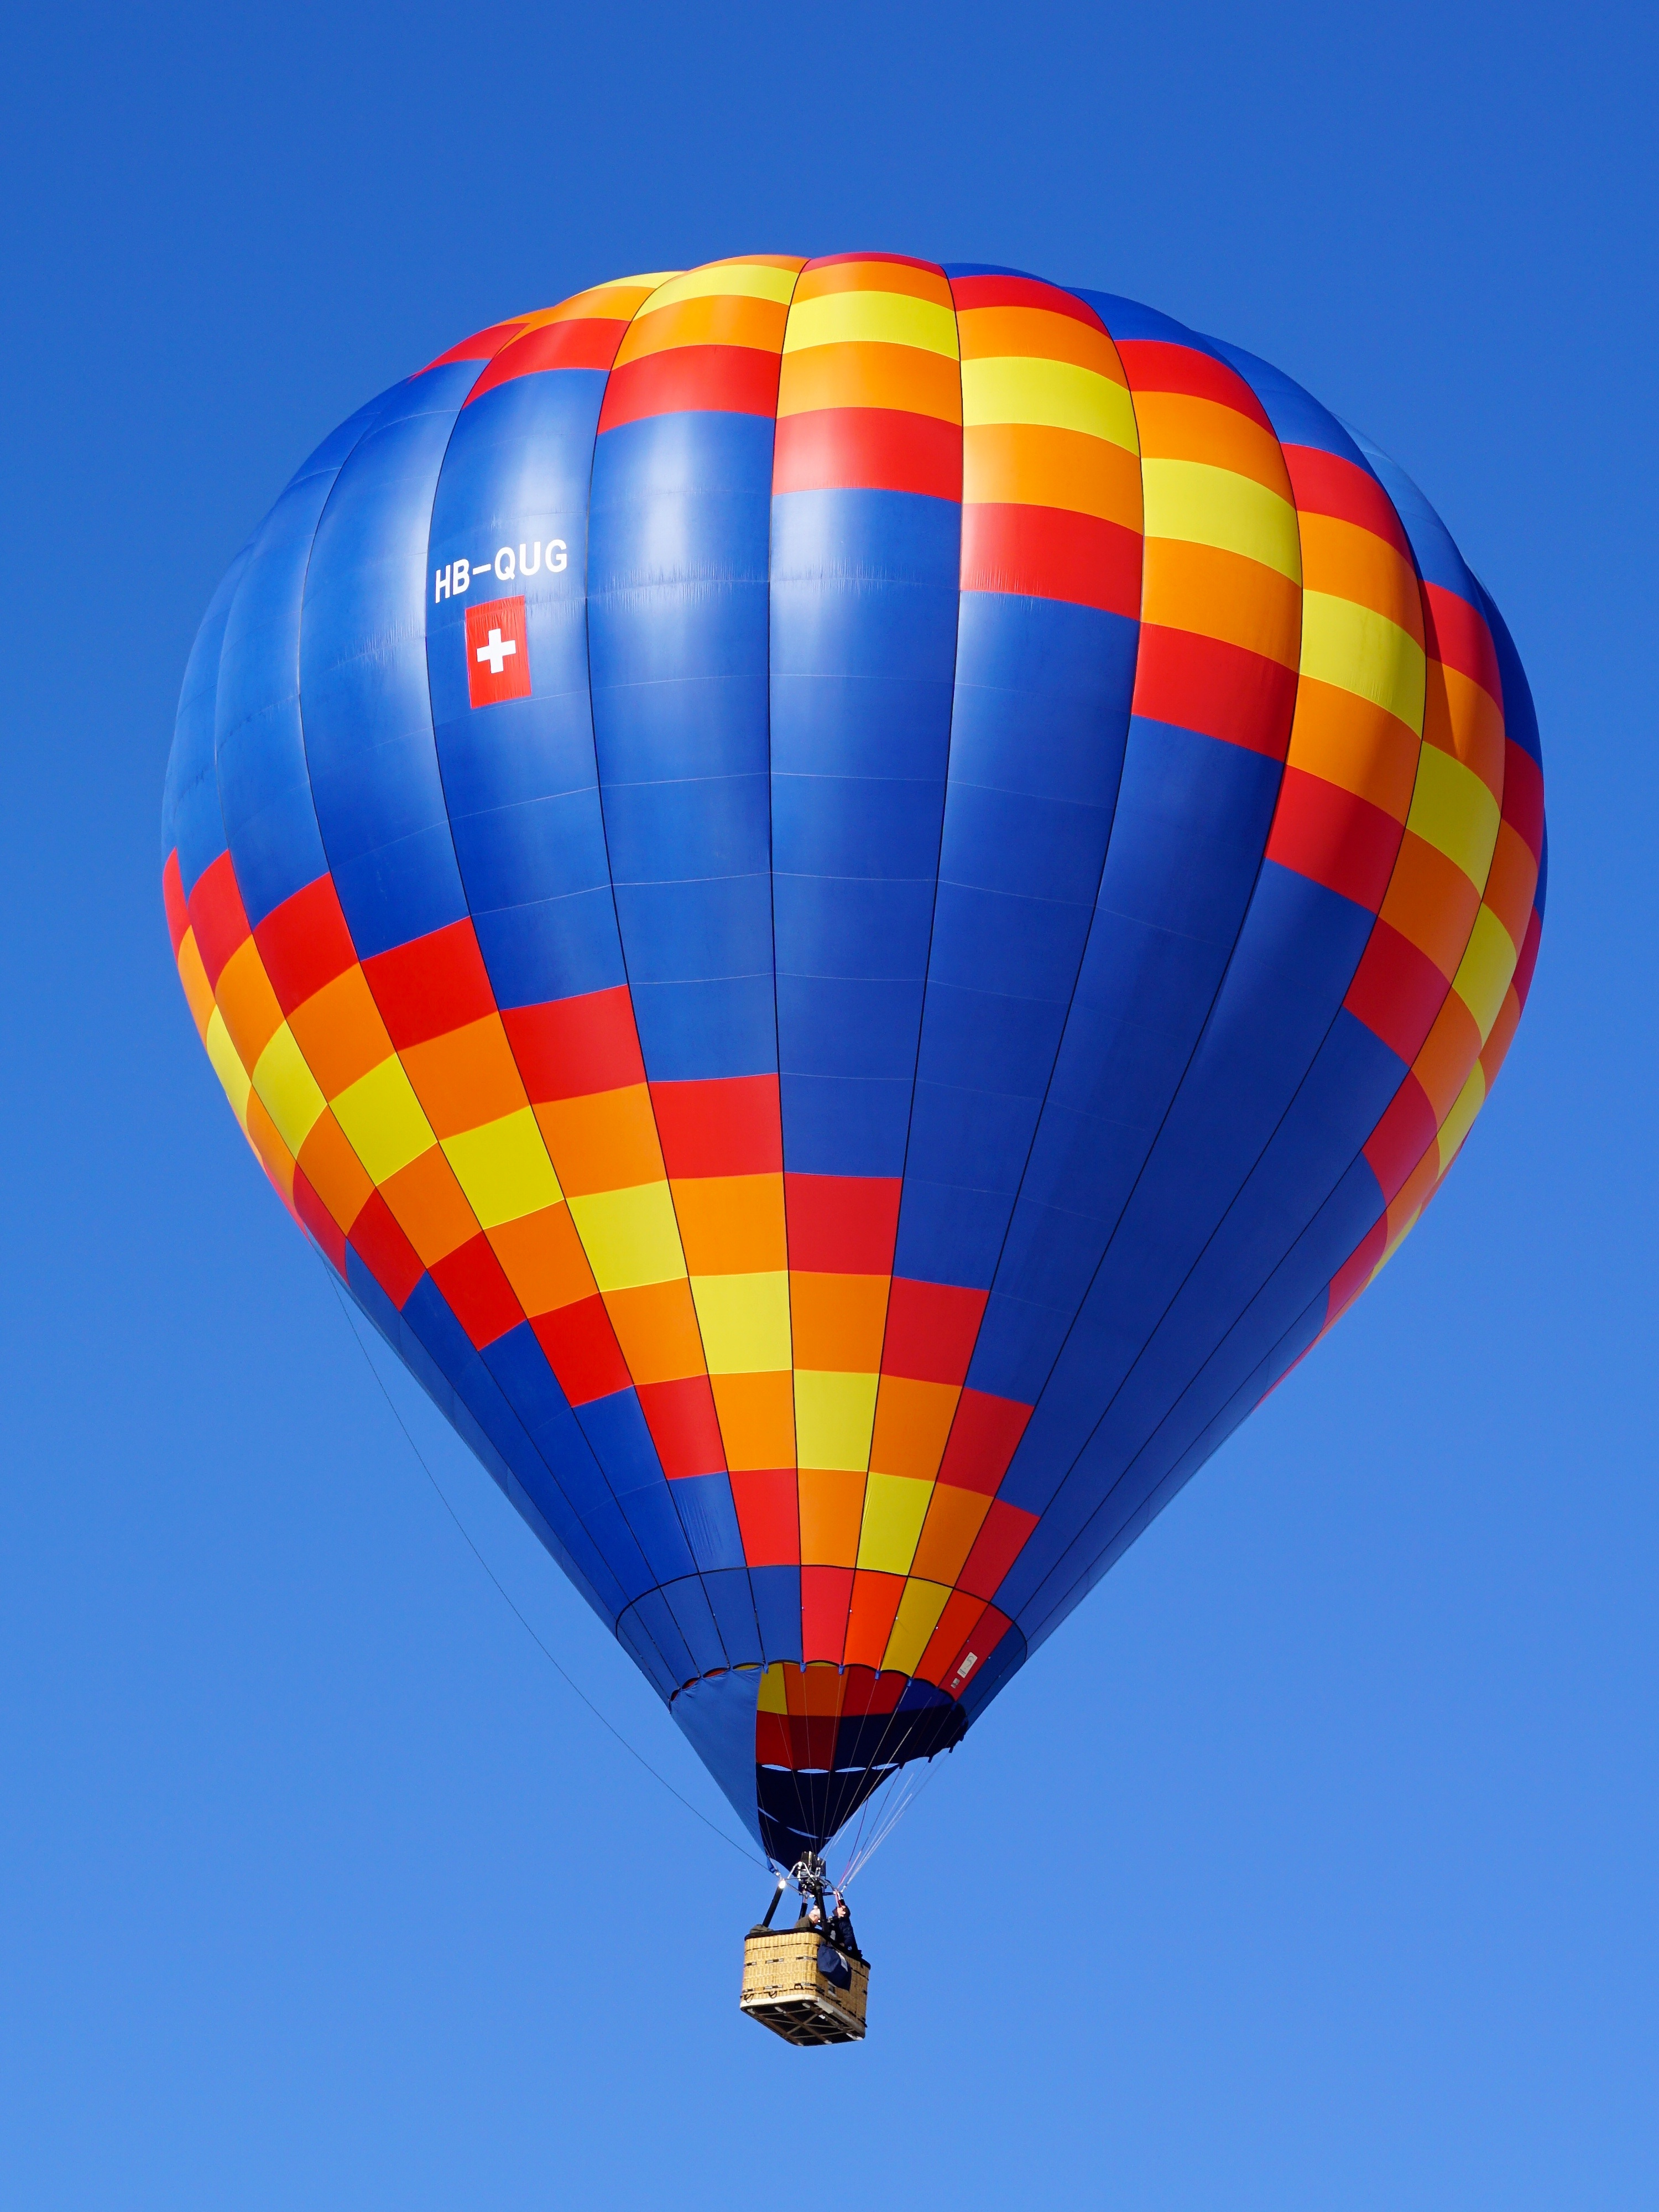 Canva - Hot Air Balloon